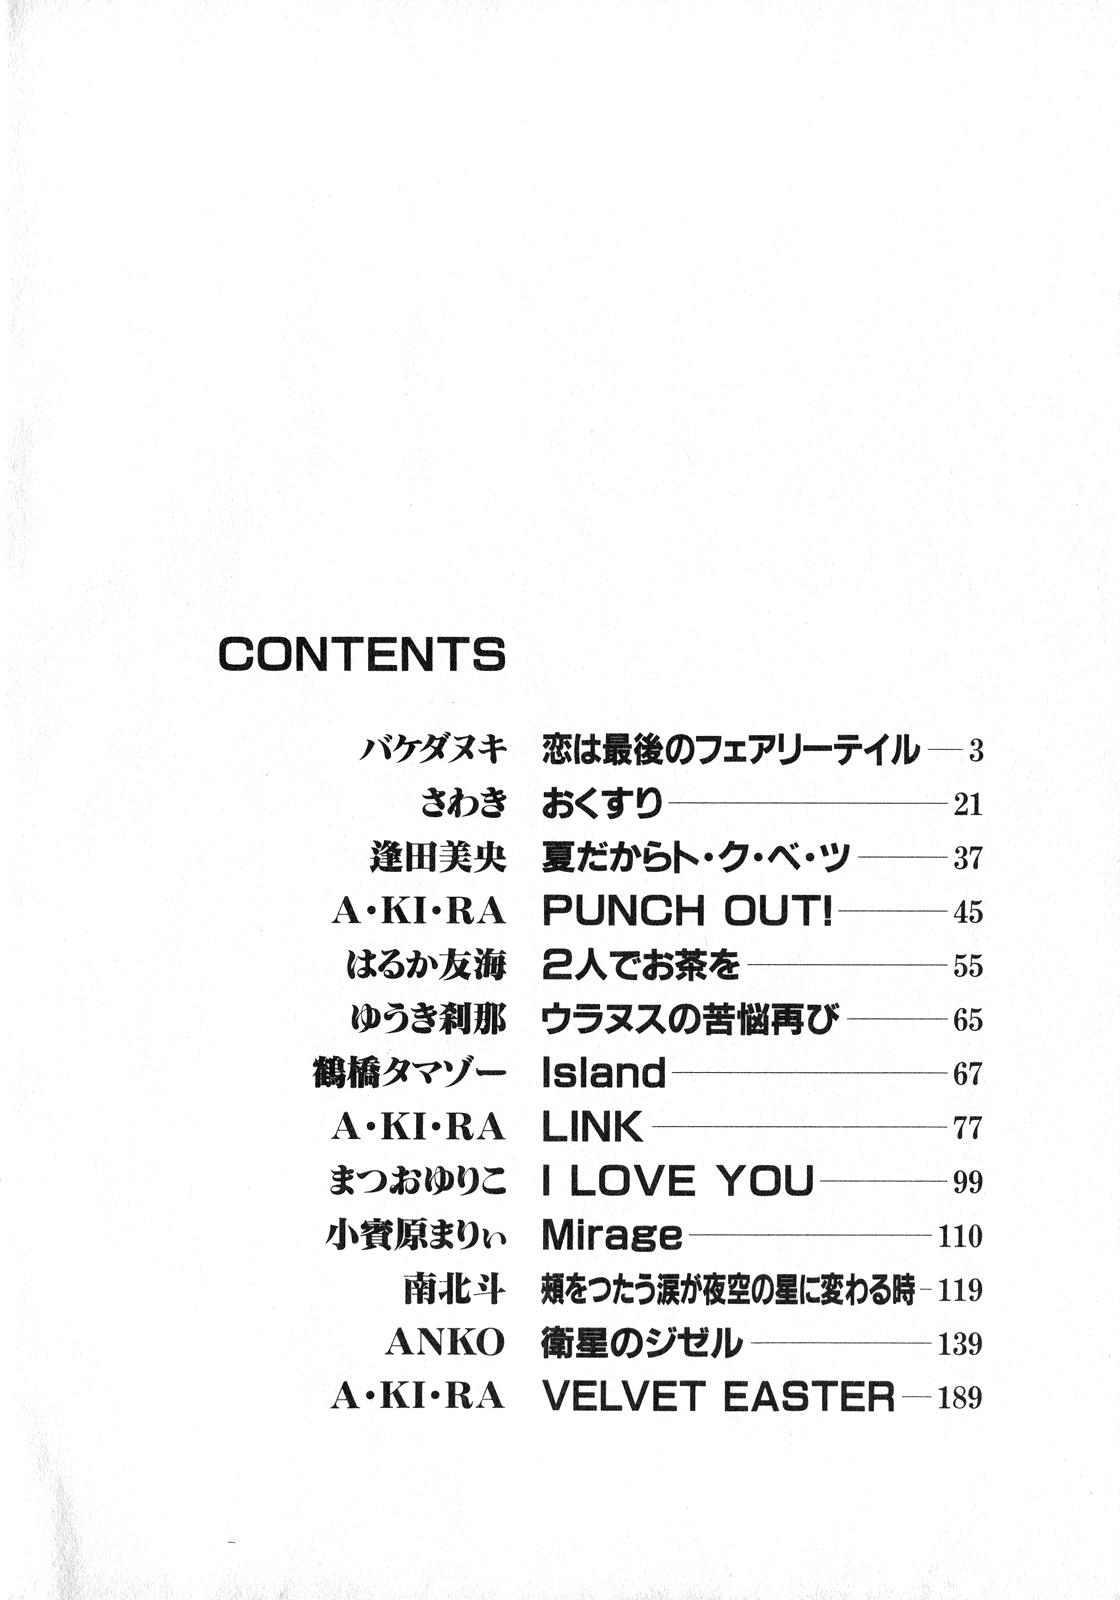 Boquete Lunatic Party 8 - Sailor moon Whores - Page 3